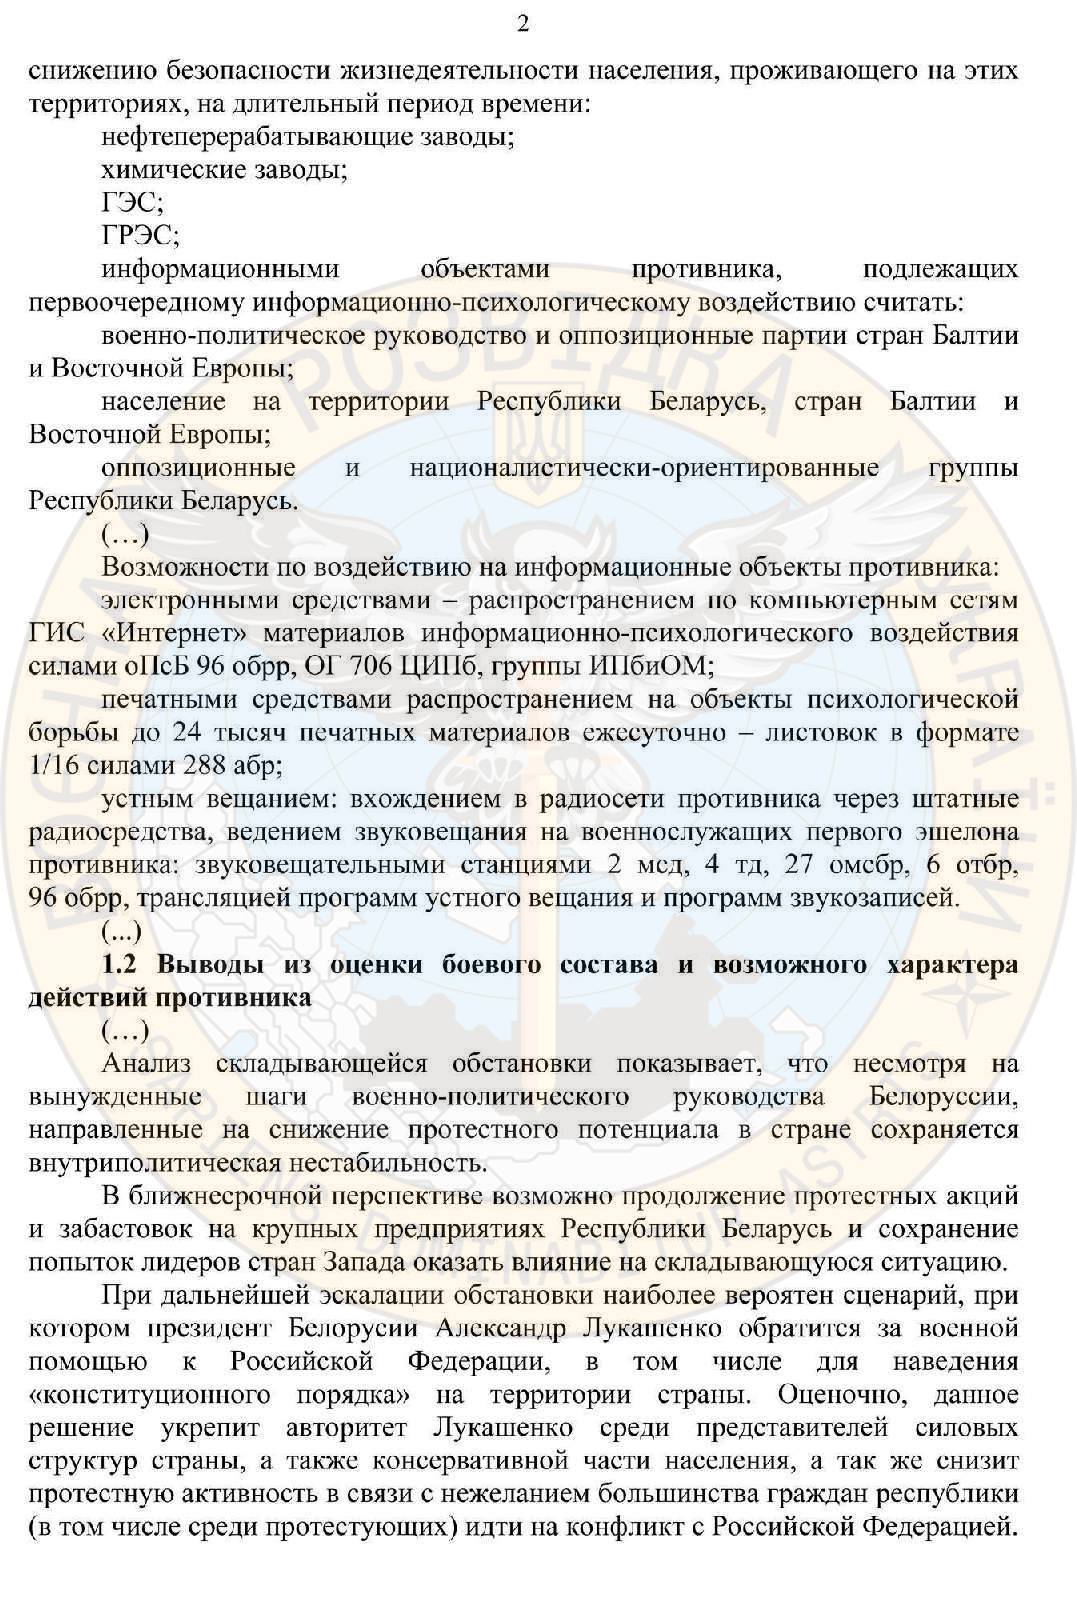 ГУР: армия РФ планировала вторжение в Беларусь (документ) - 2 - изображение